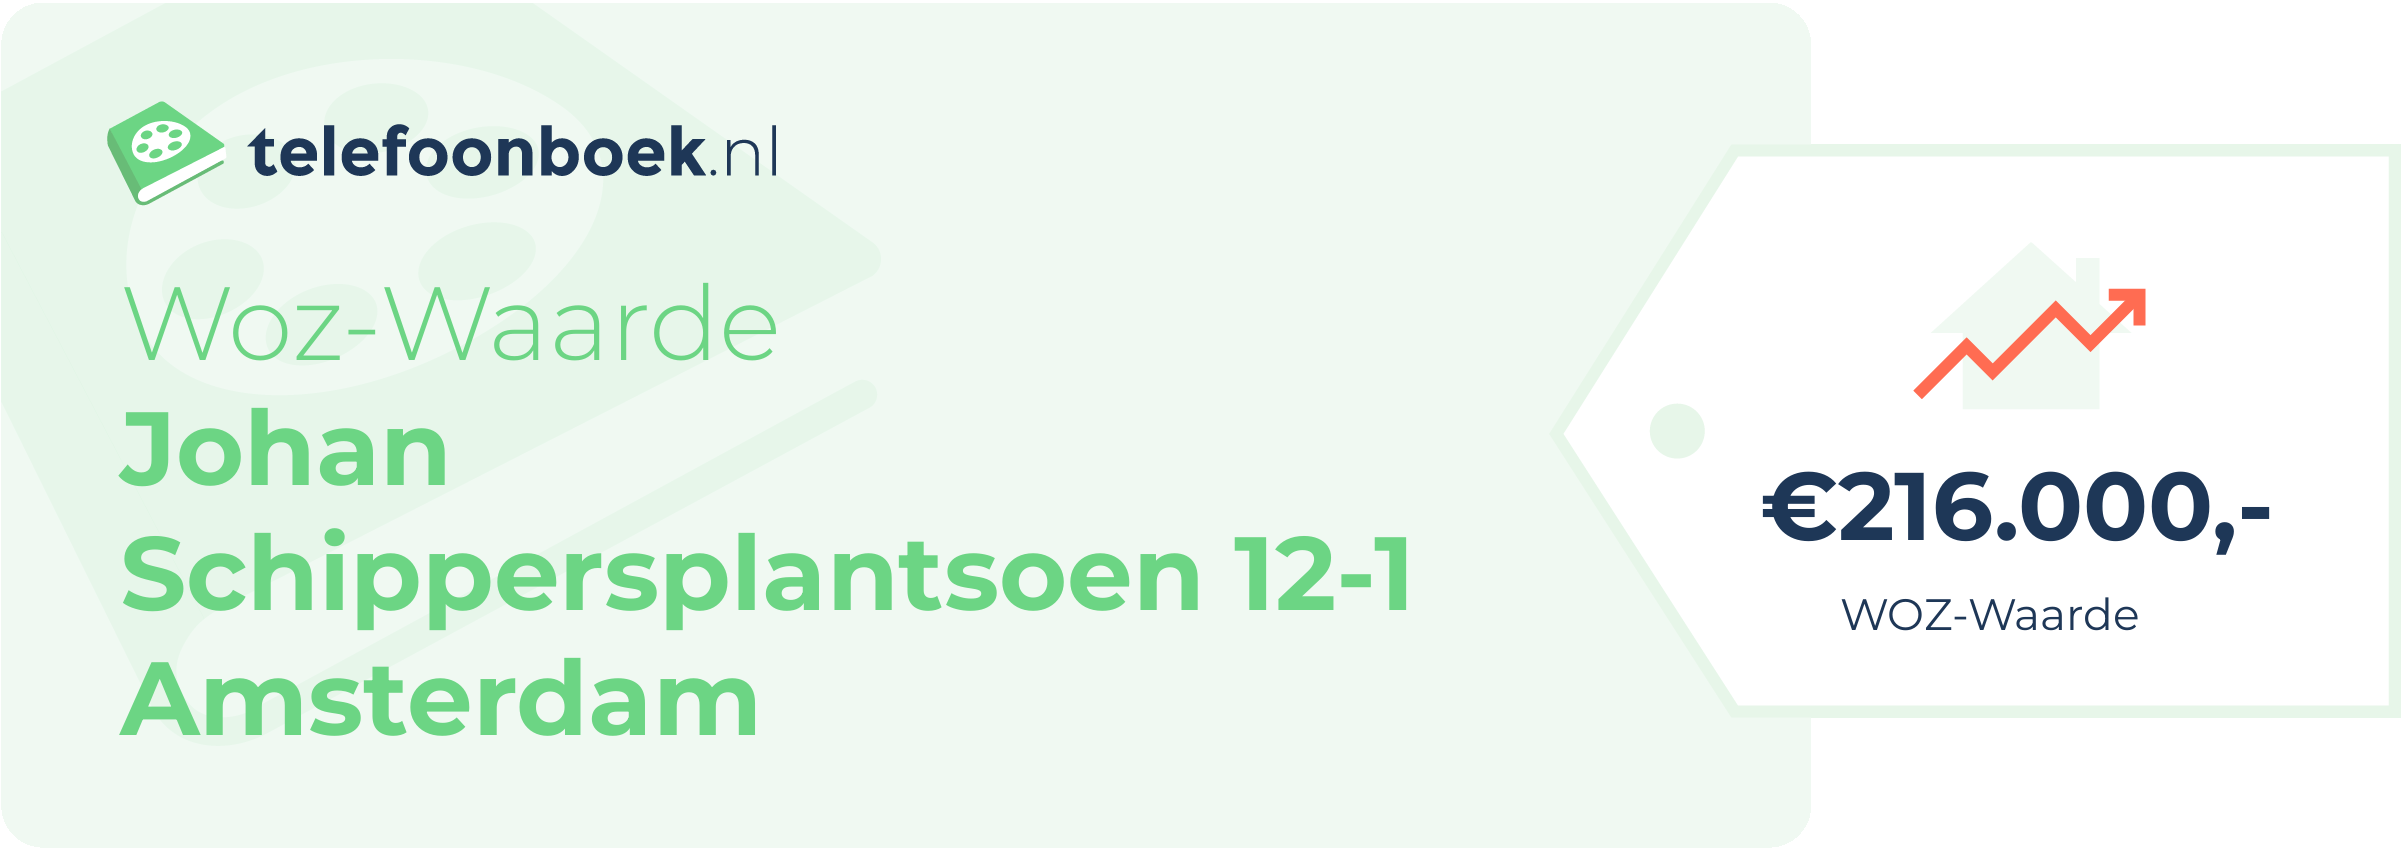 WOZ-waarde Johan Schippersplantsoen 12-1 Amsterdam